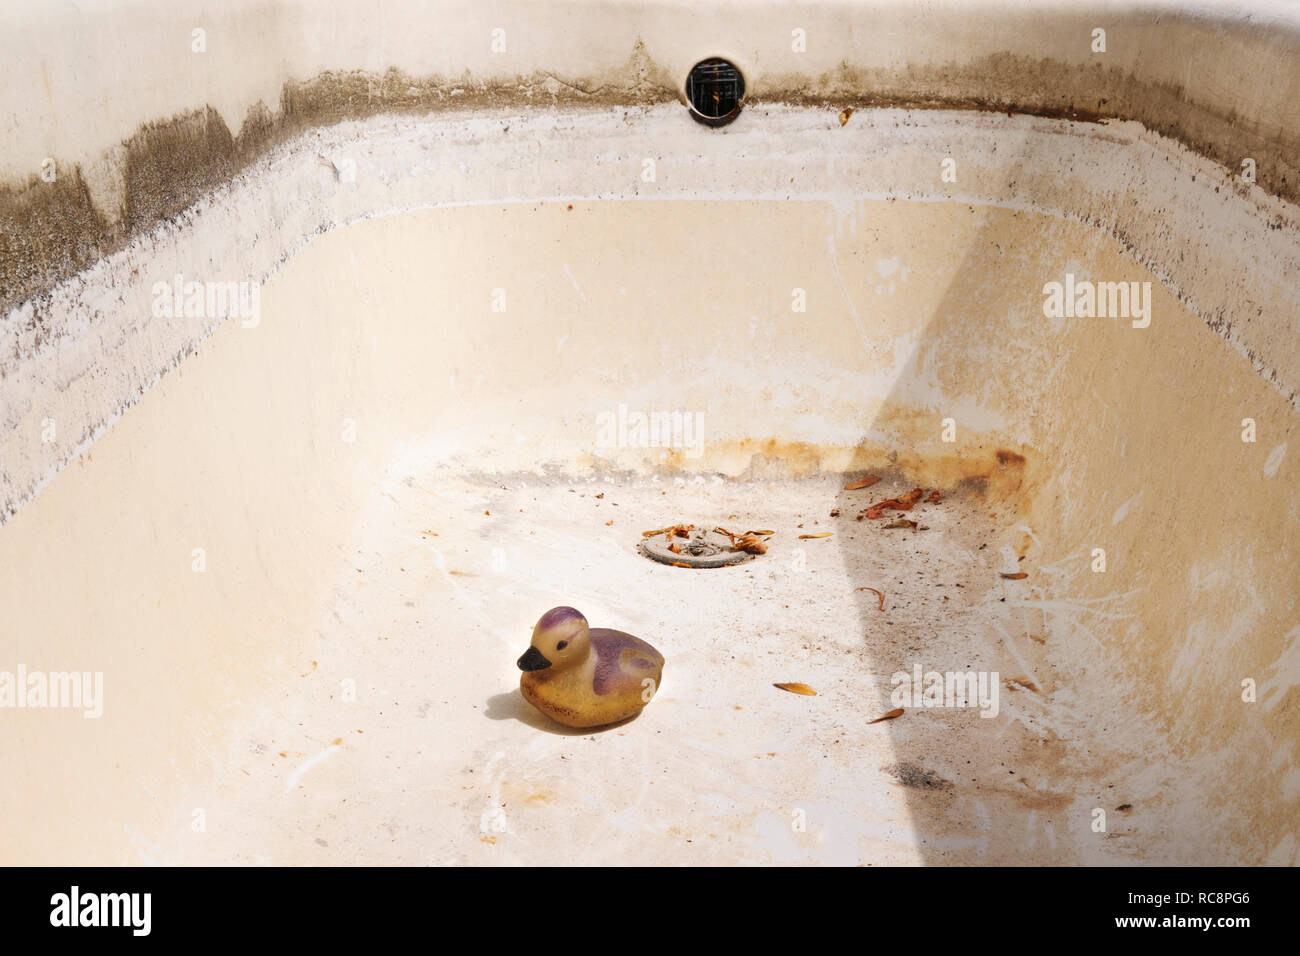 Kunststoff Ente in leeren Badewanne wird das Regenwasser für den Garten zu sammeln. Das Wasser hat während einer längeren Trockenperiode verwendet worden. Stockfoto